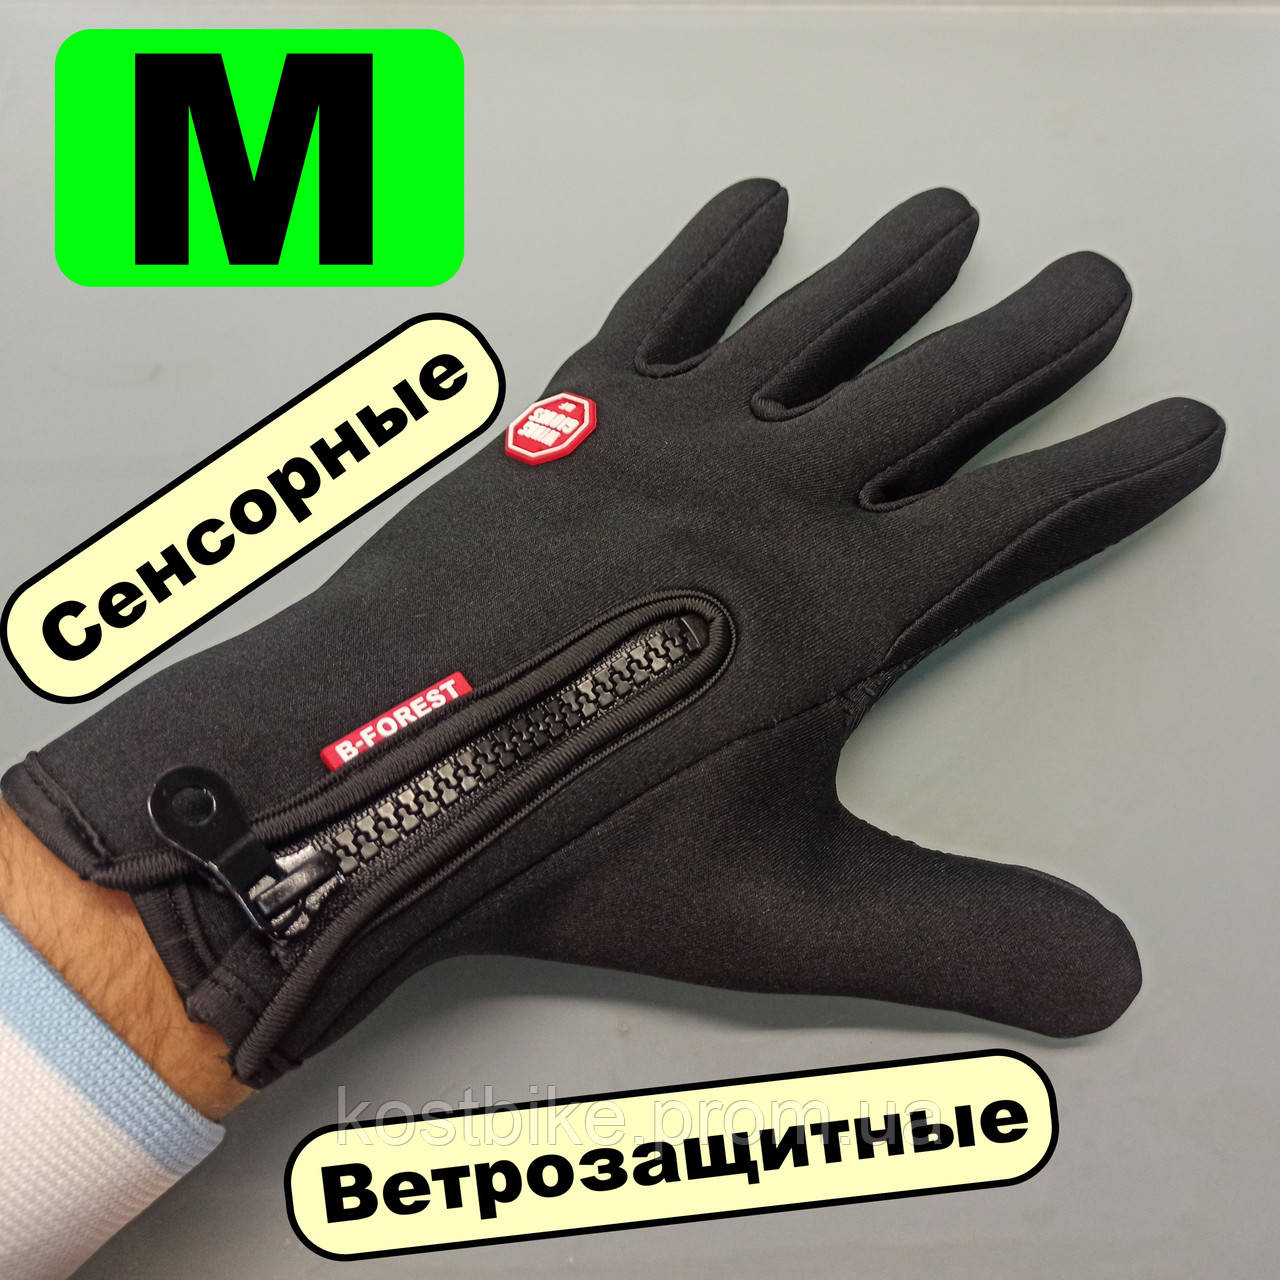 

Спортивные перчатки неопреновые Черные сенсорные осенние B-Forest весна для бега самоката вело перчатки M